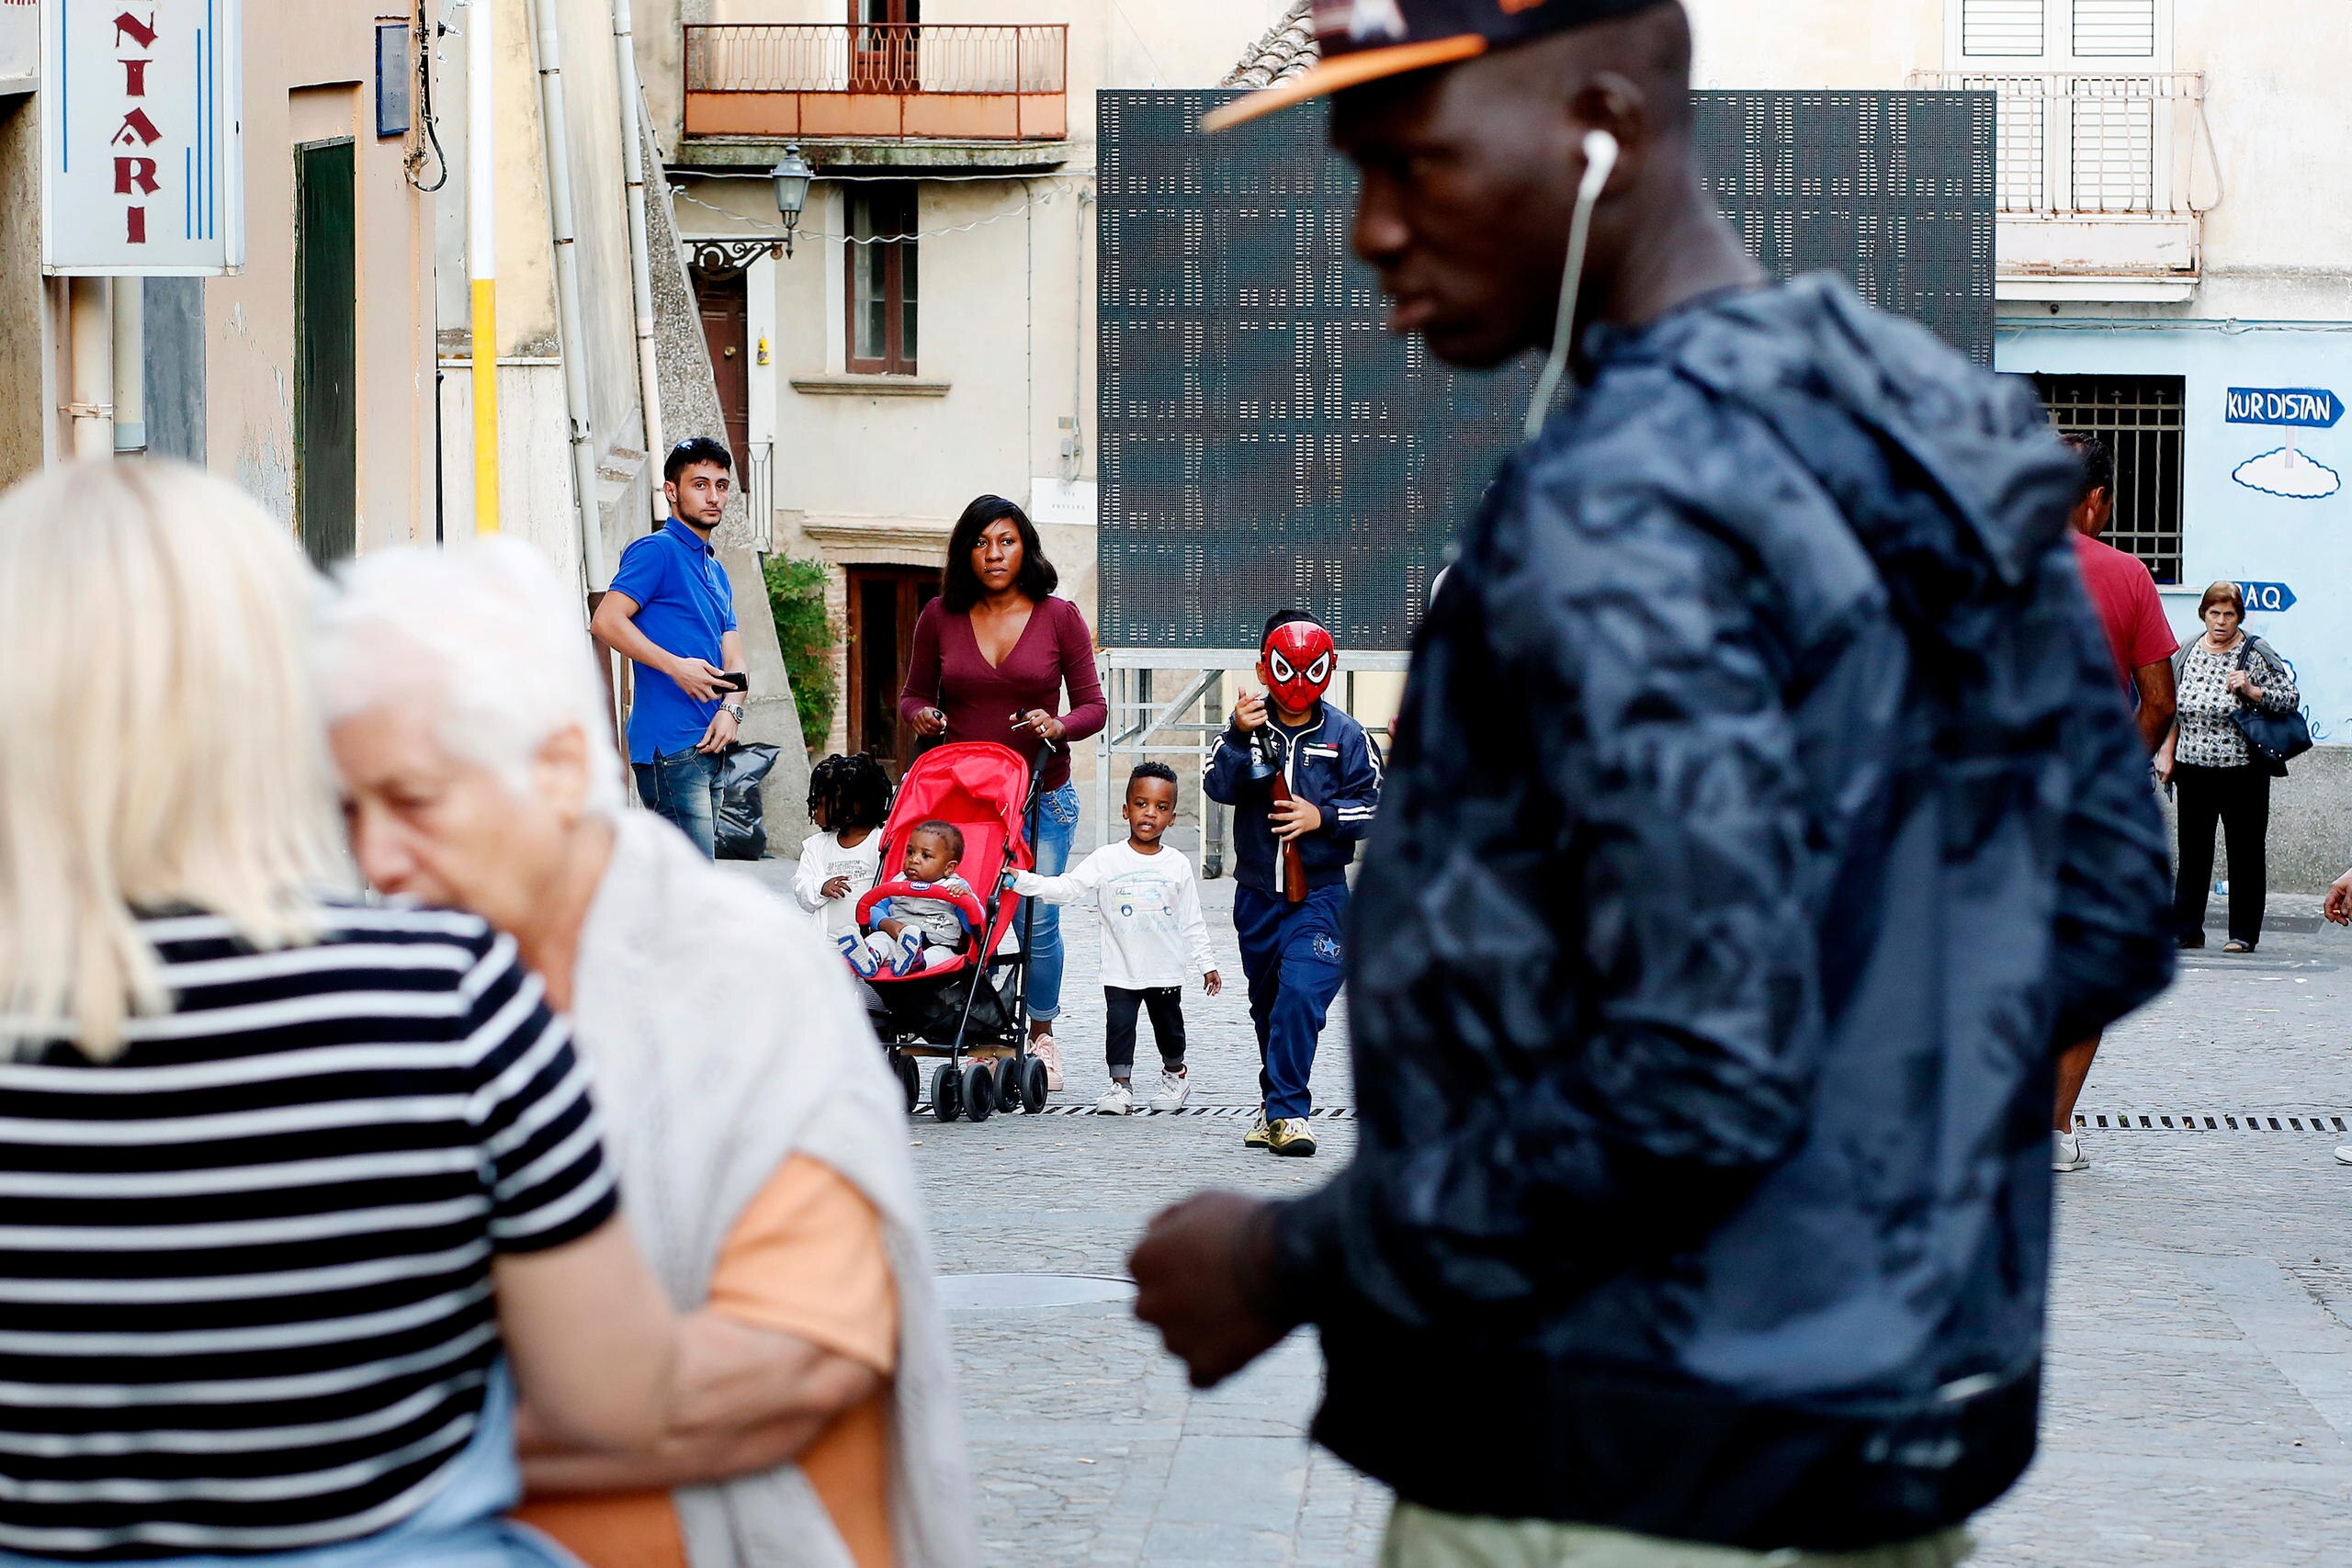 Persone a passeggio nelle strade di Riace, con un uomo di colore in primo piano